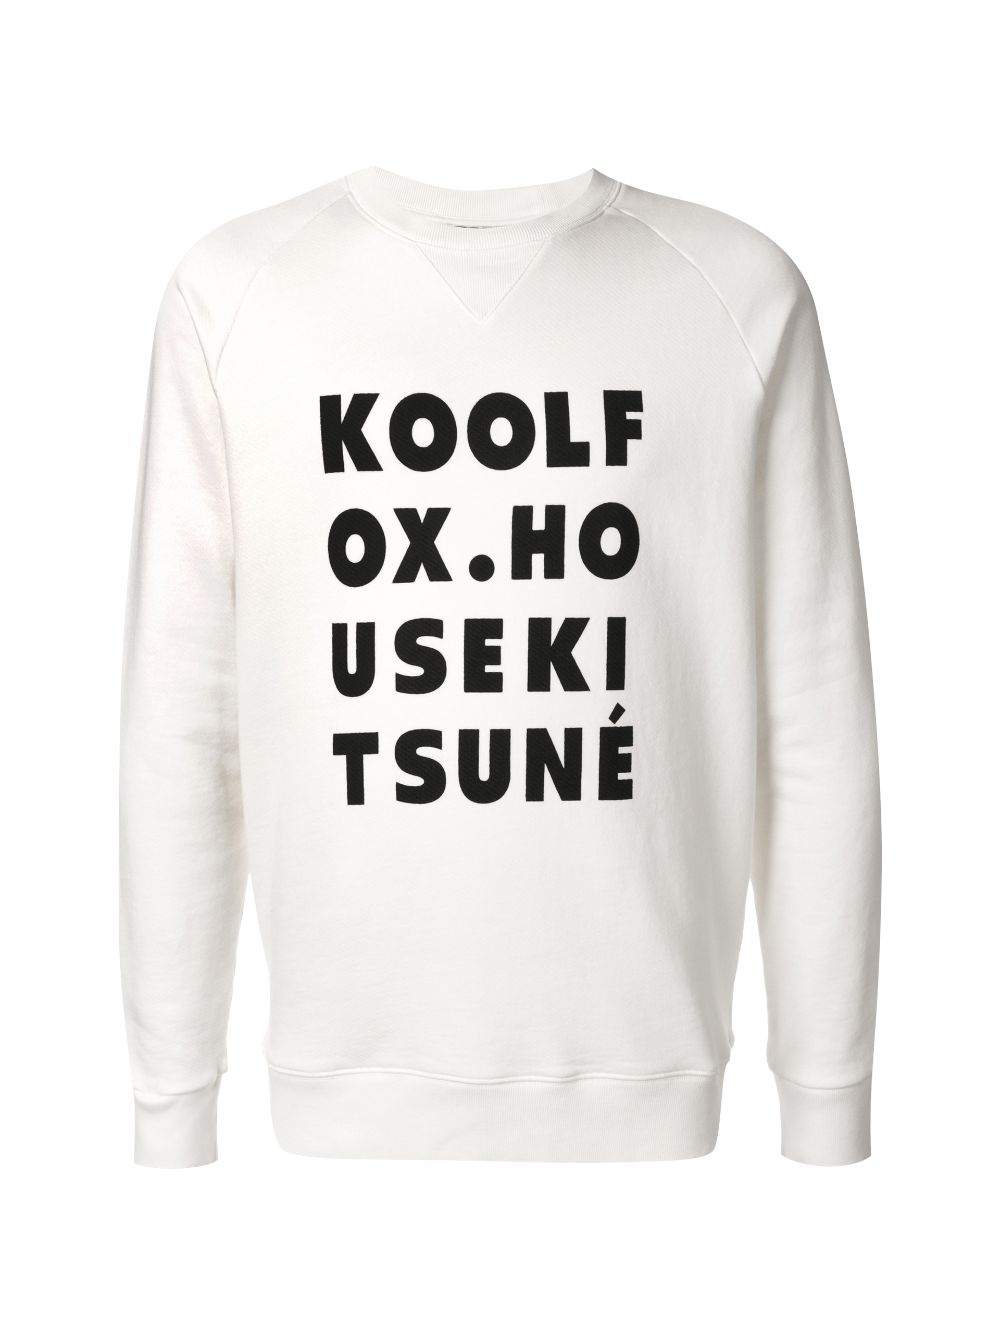 KoolFox sweatshirt | Maison Kitsuné | Eraldo.com US